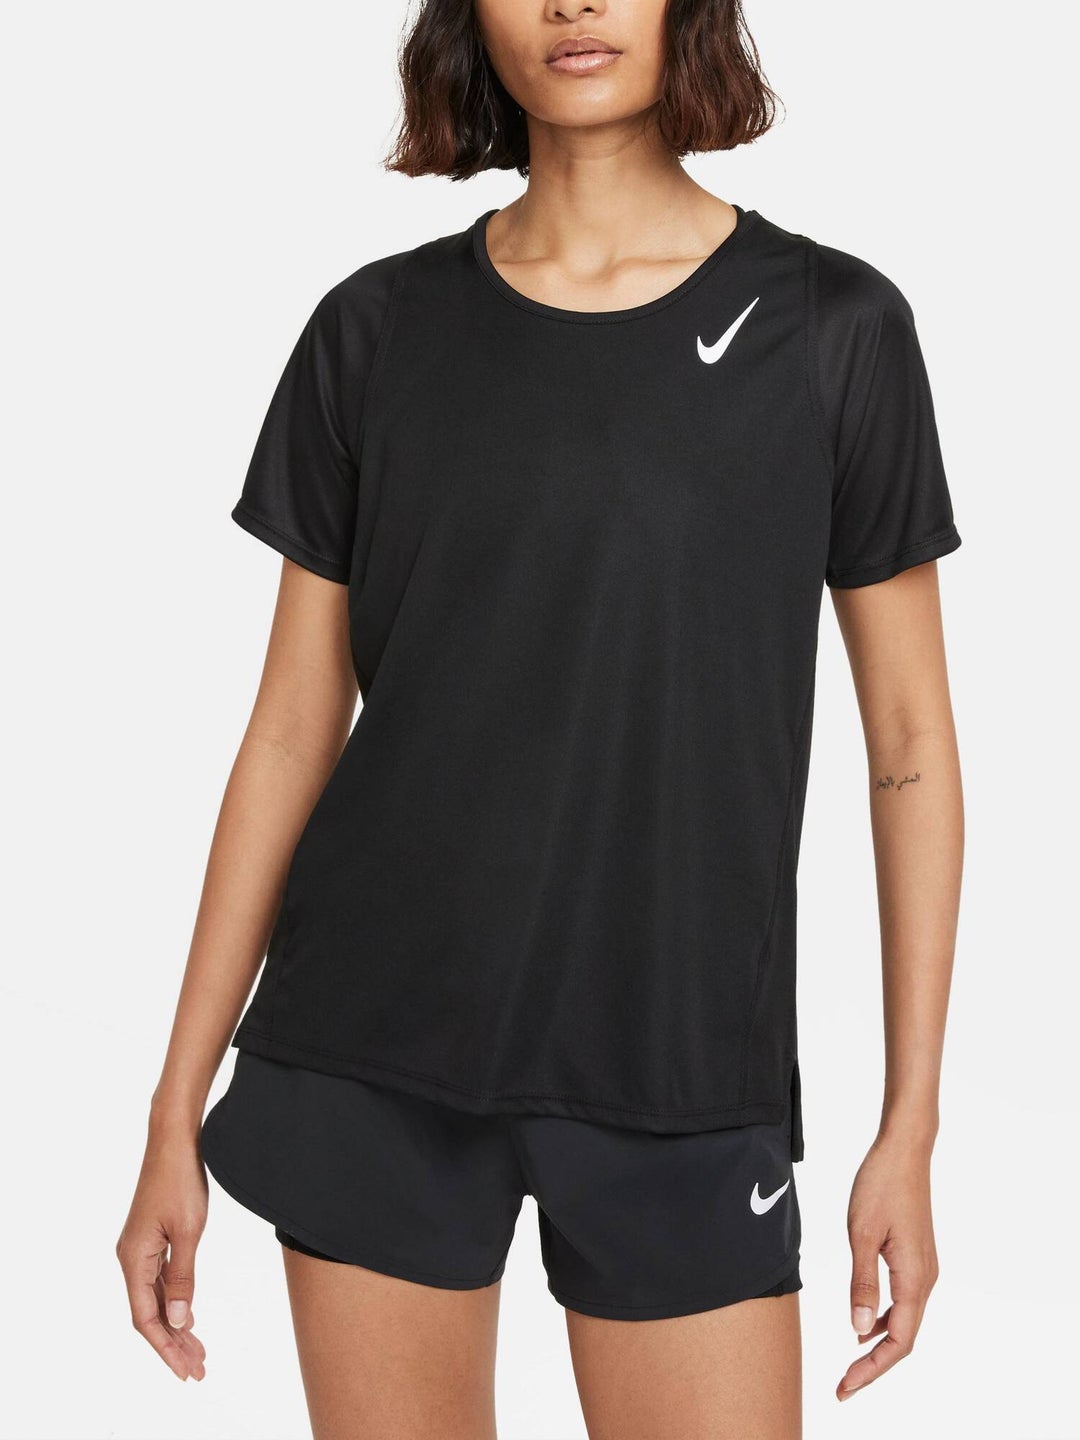 Nike Women's Dri-Fit Race Top | Tennis Warehouse Europe